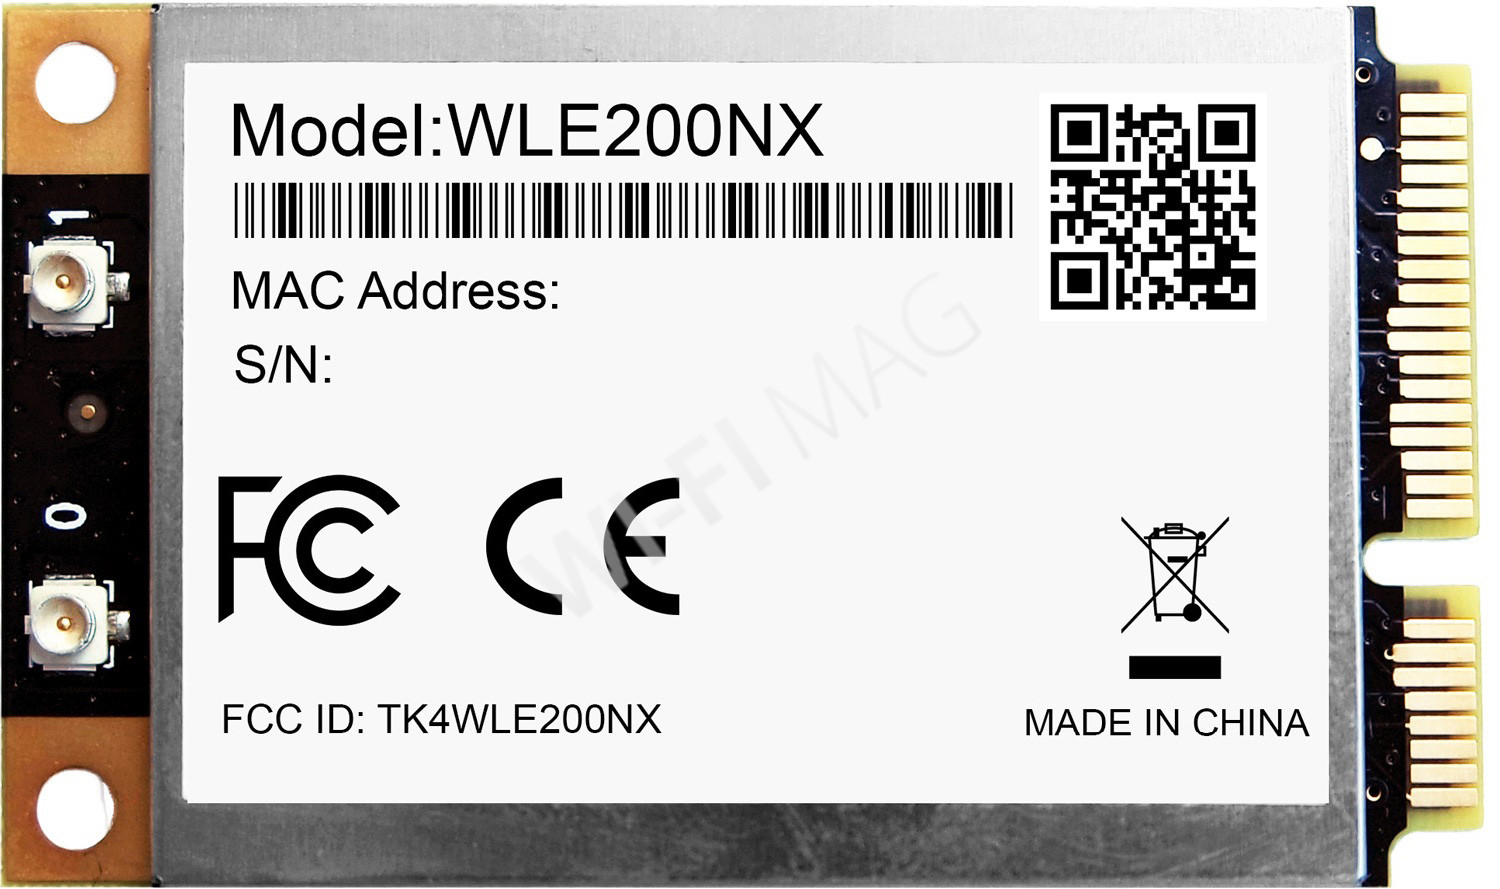 Compex WLE200NX Dual Band 2×2 802.11n Module - Atheros XB92, электронное устройство